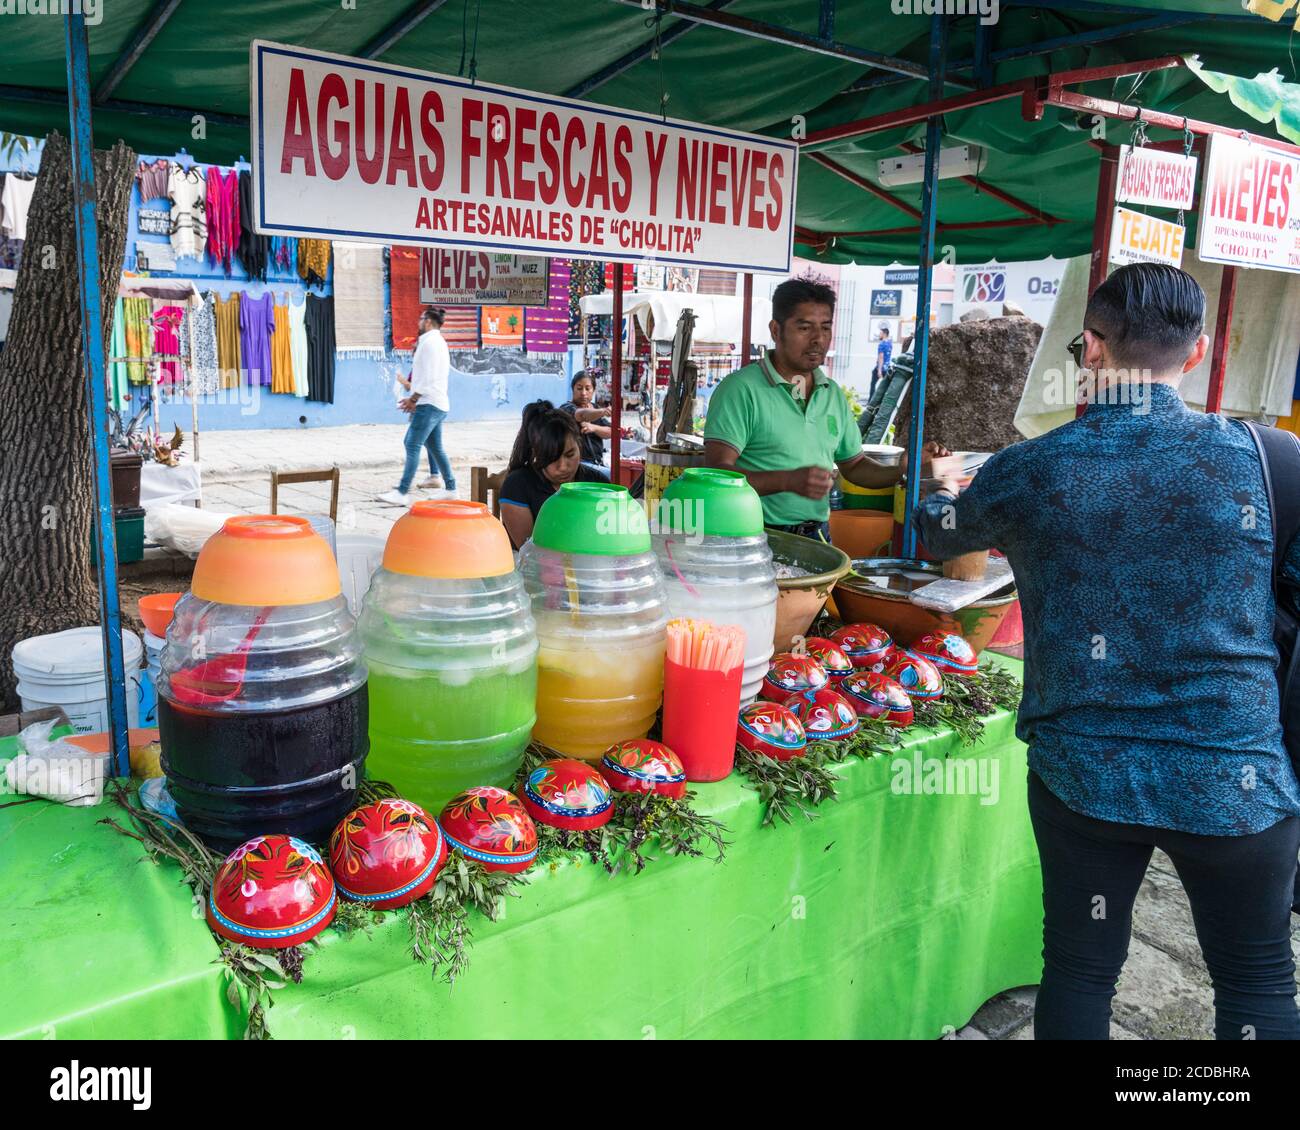 Farmers' Market Inspiration: Aguas Frescas